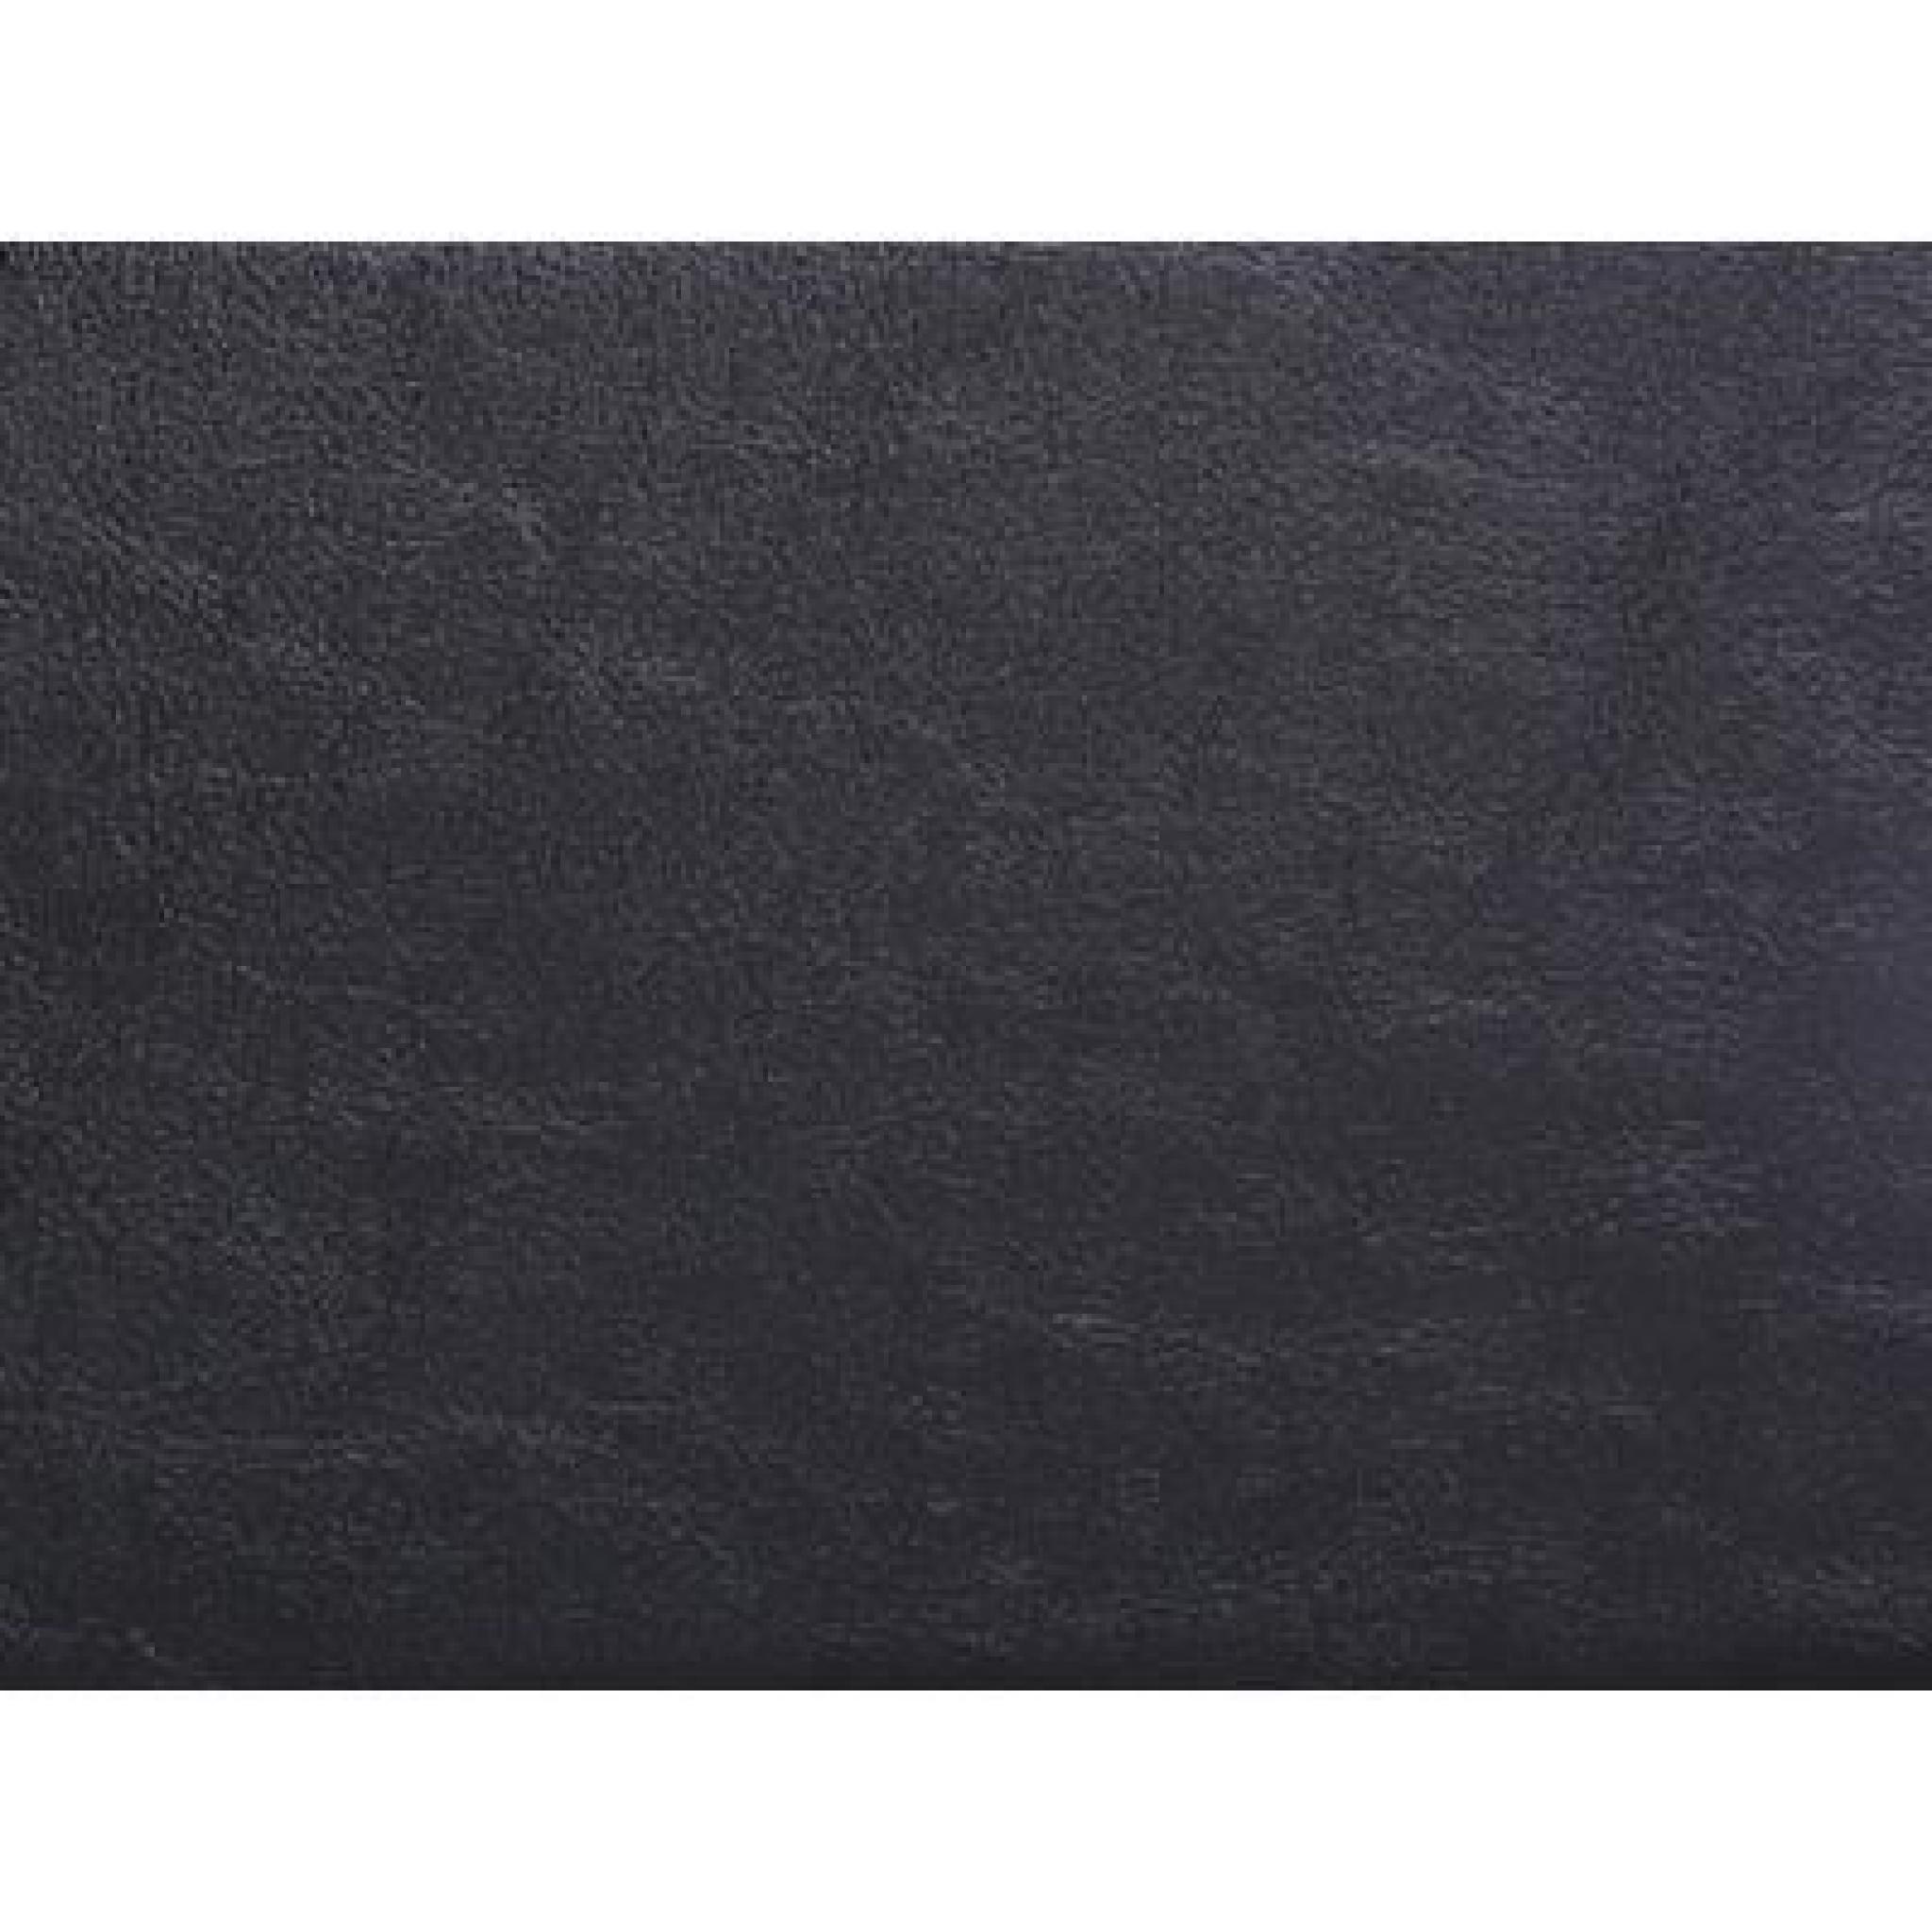 Lit en cuir - lit double 160x200 cm - noir - sommier inclus - Arles pas cher